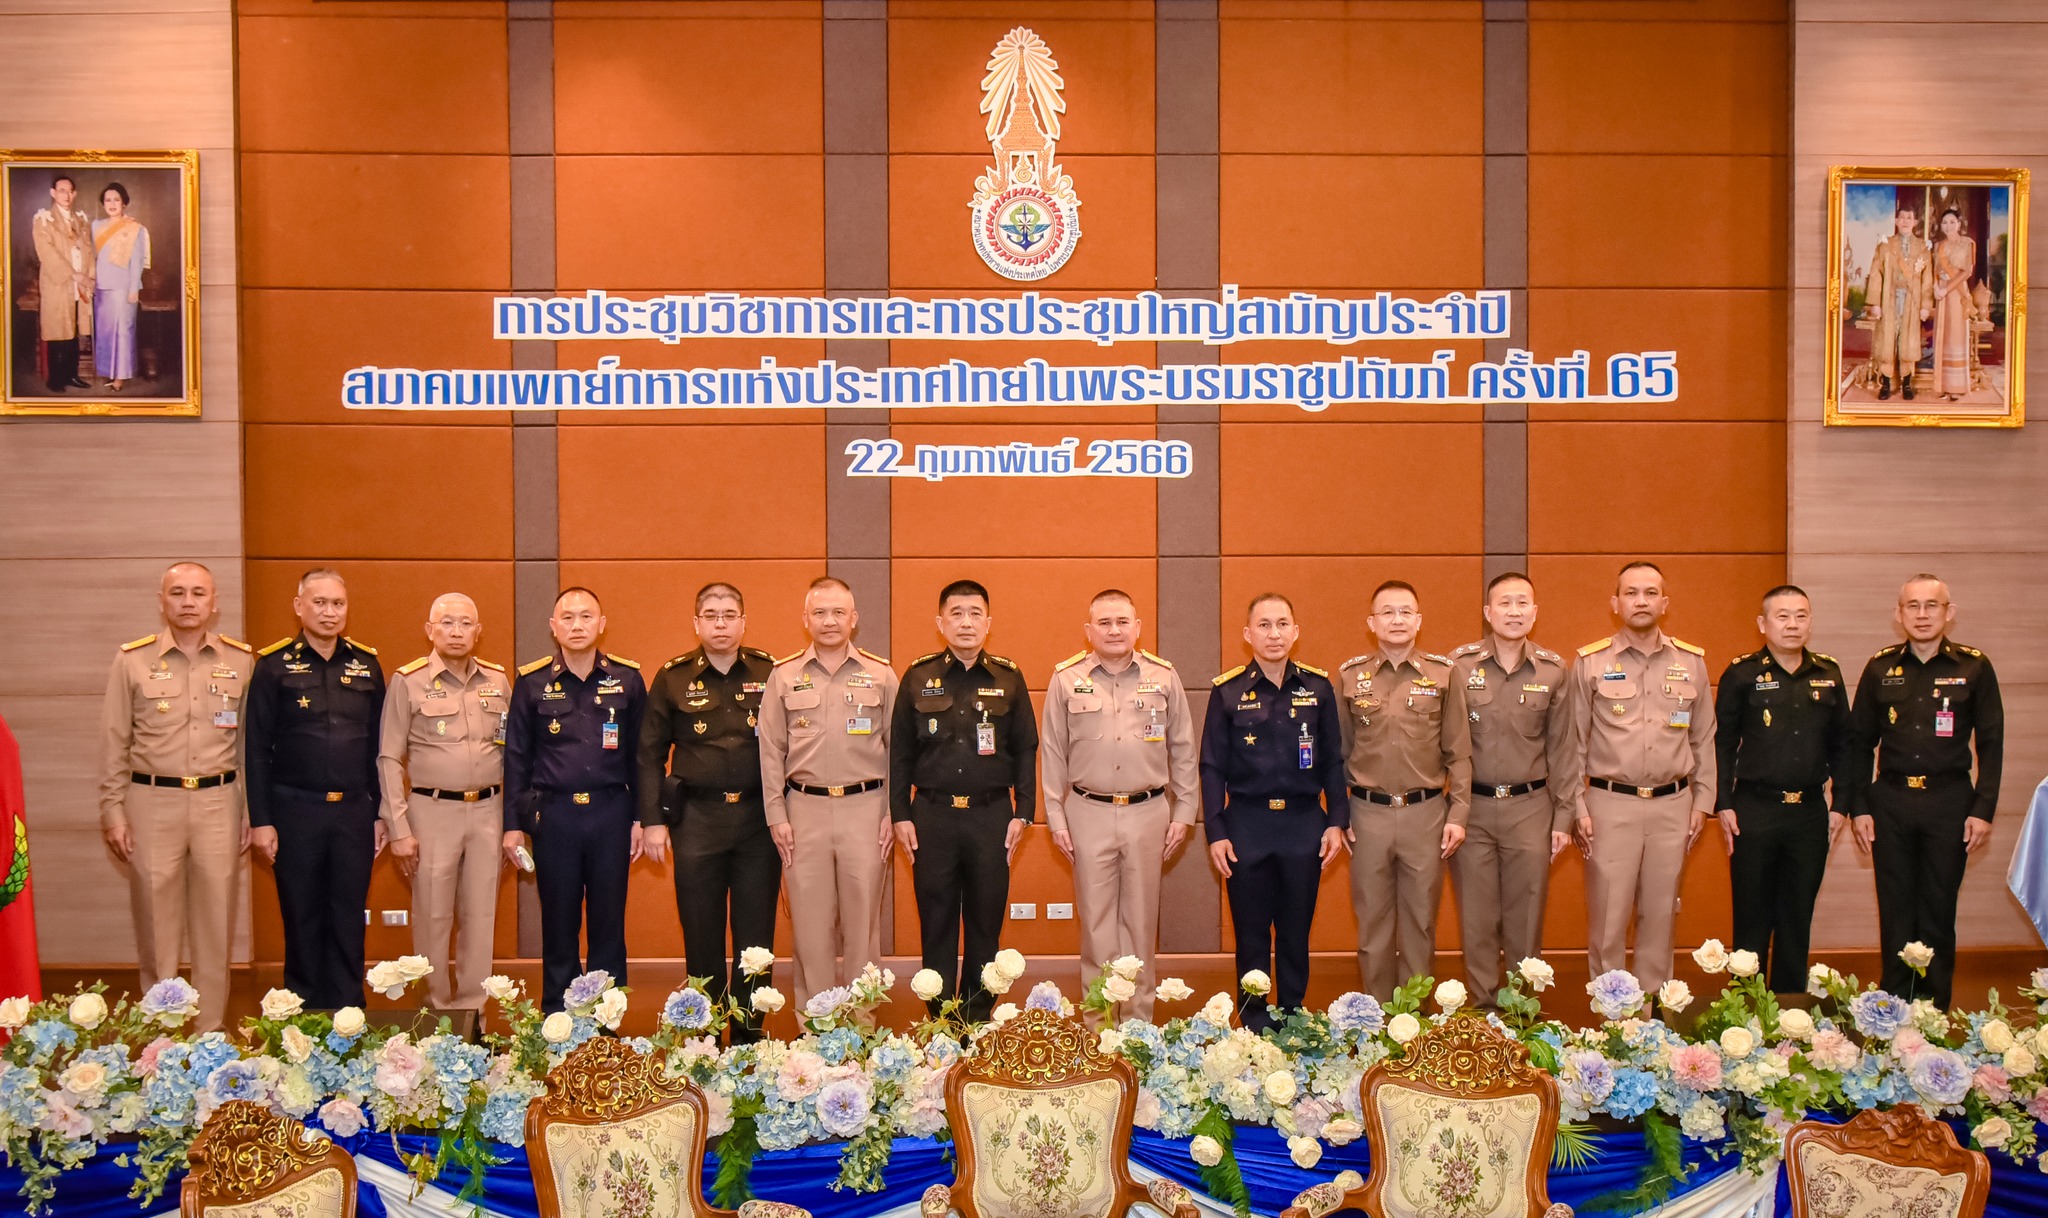 ผู้อำนวยการโรงพยาบาลสมเด็จพระปิ่นเกล้า กรมแพทย์ทหารเรือ ร่วมงานประชุมวิชาการและงานประชุมใหญ่สามัญประจำปี สมาคมแพทย์ทหารแห่งประเทศไทยในพระบรมราชูปถัมภ์ ครั้งที่ 65 